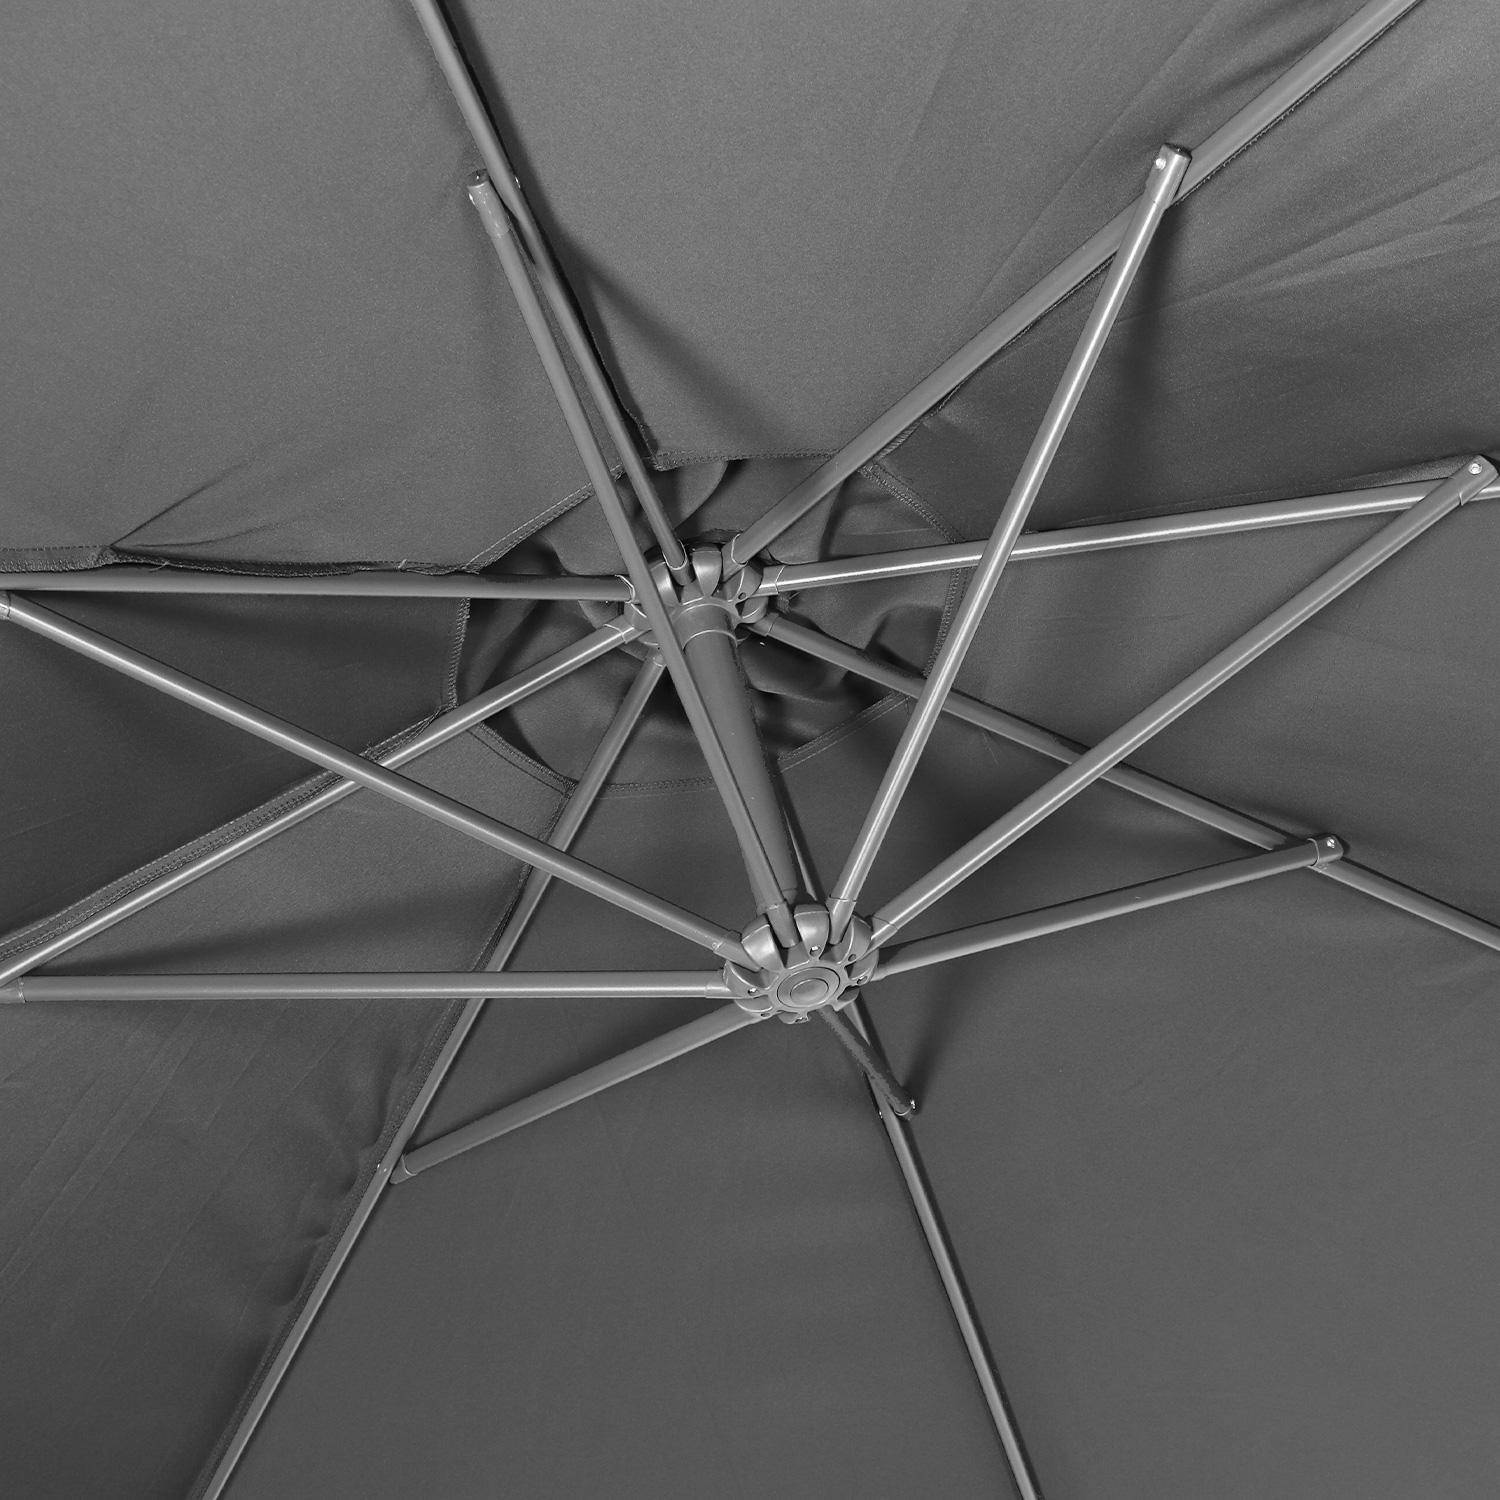 Ombrellone offset Ø350cm - Hardelot - Colore grigio, struttura antracite, manovella a scomparsa. Photo5